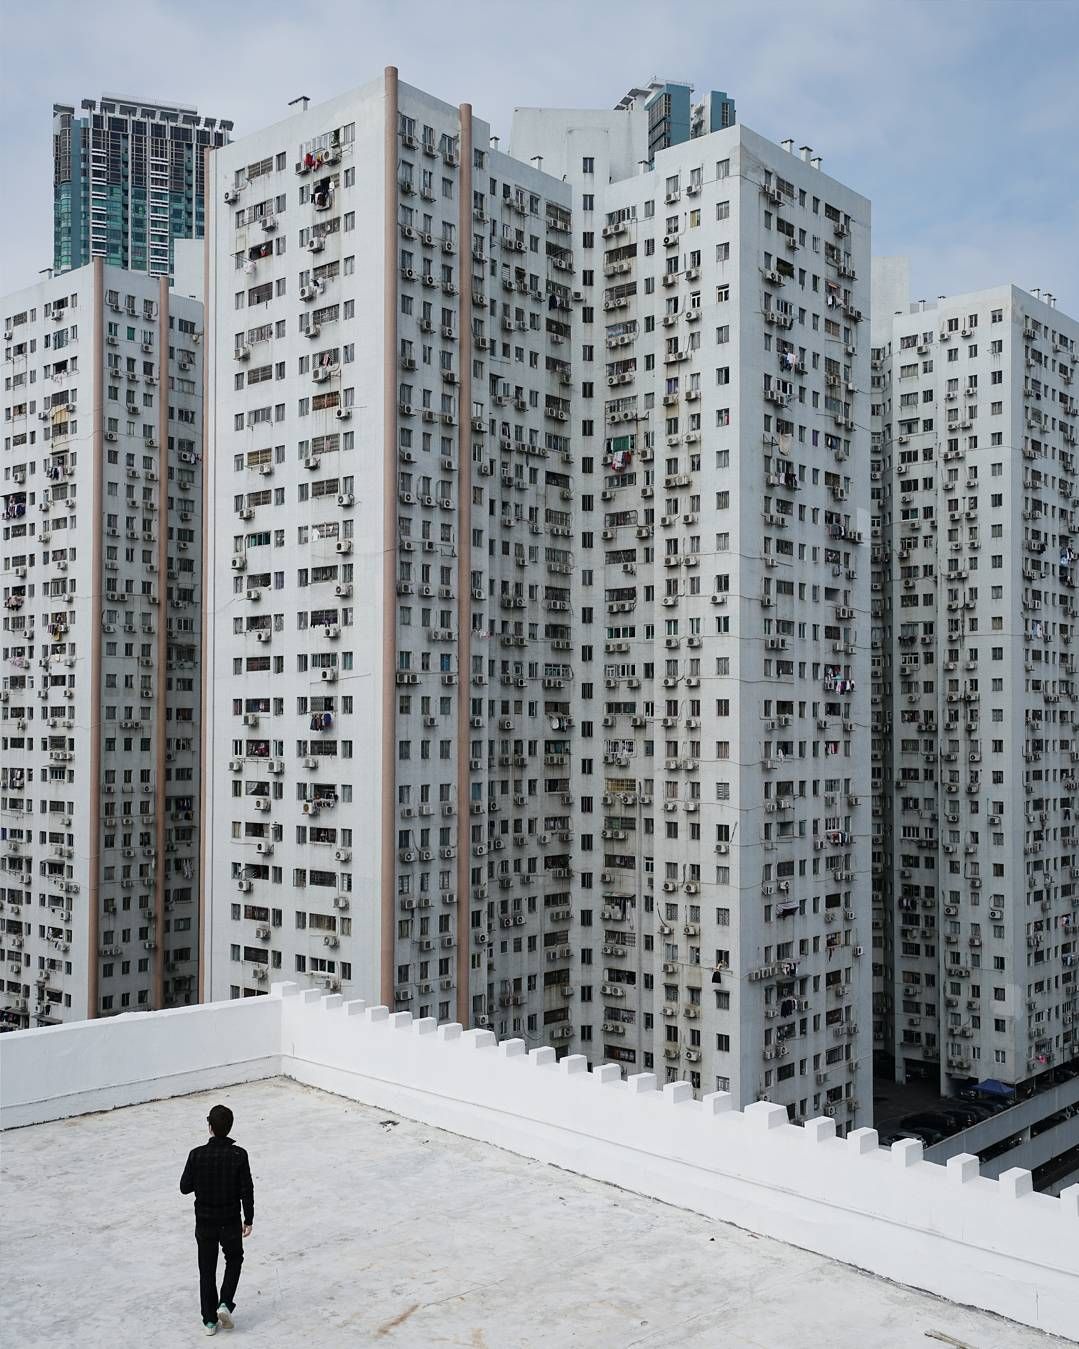 Fotograf ujął przerażająco szybki rozwój Hongkongu. Betonowa dżungla wciąż rośnie